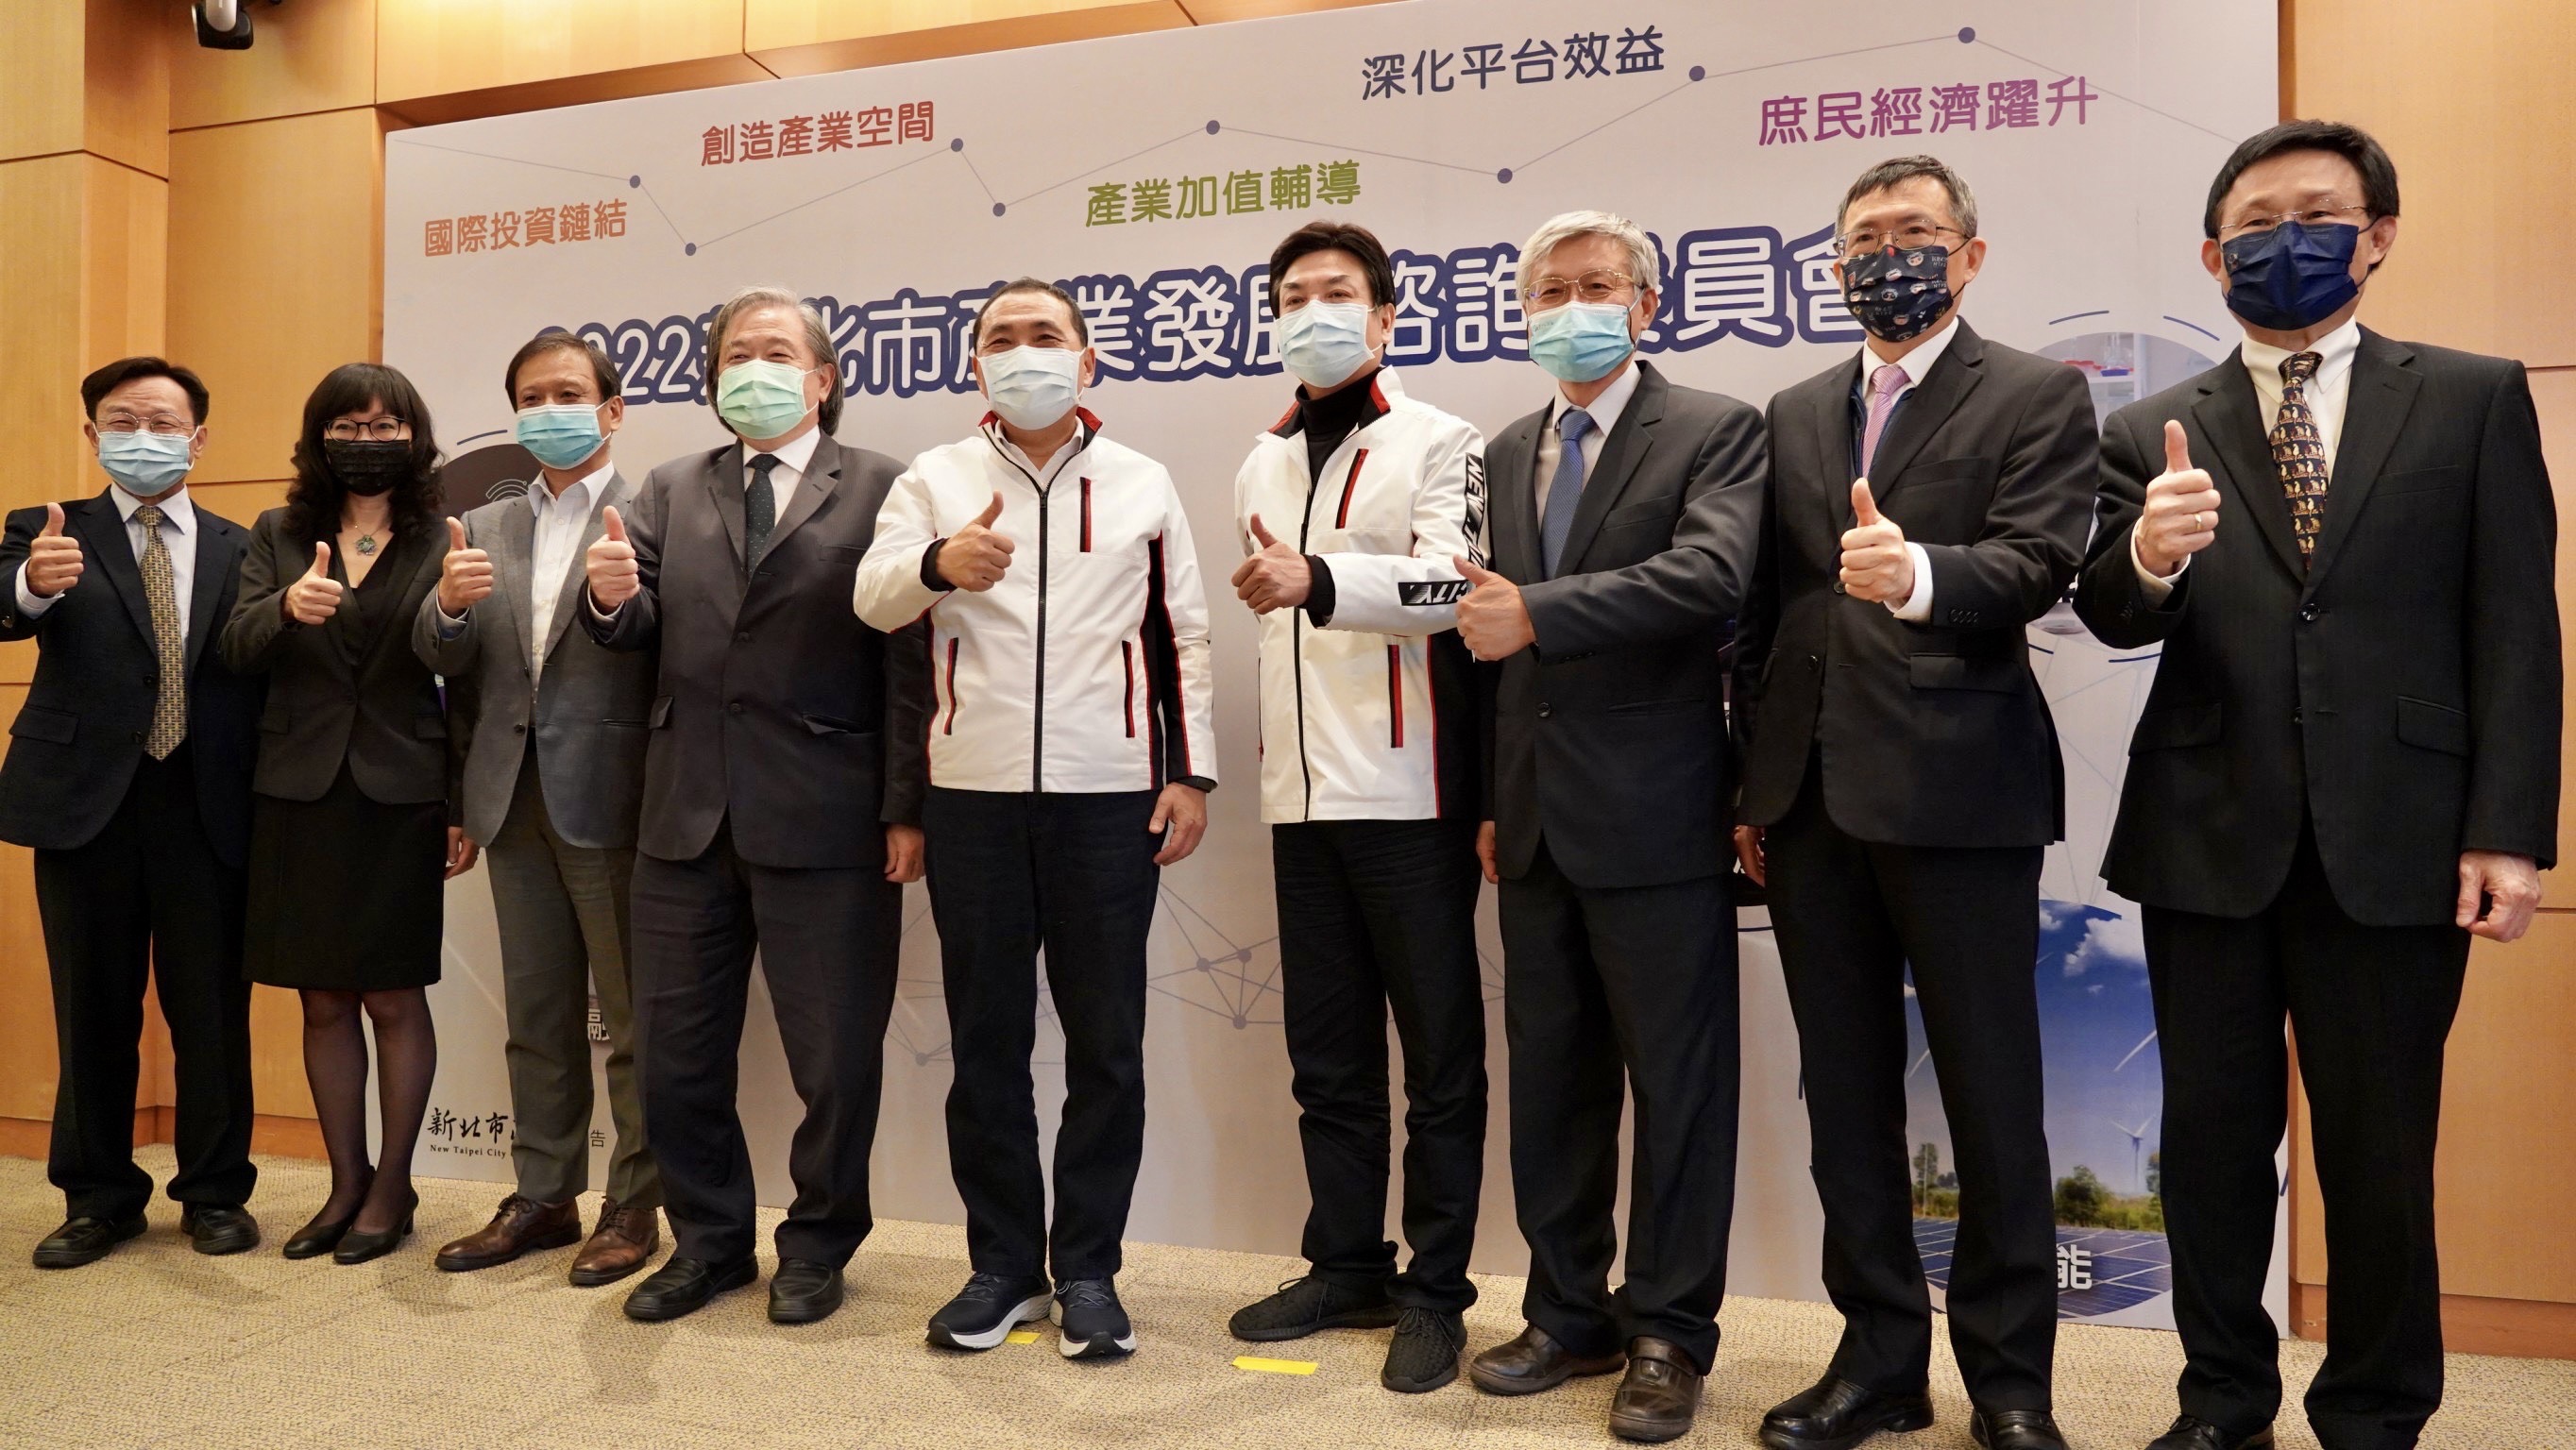 新北市長侯友宜(左五)及副市長劉和然(左六)與工商領袖代表合影